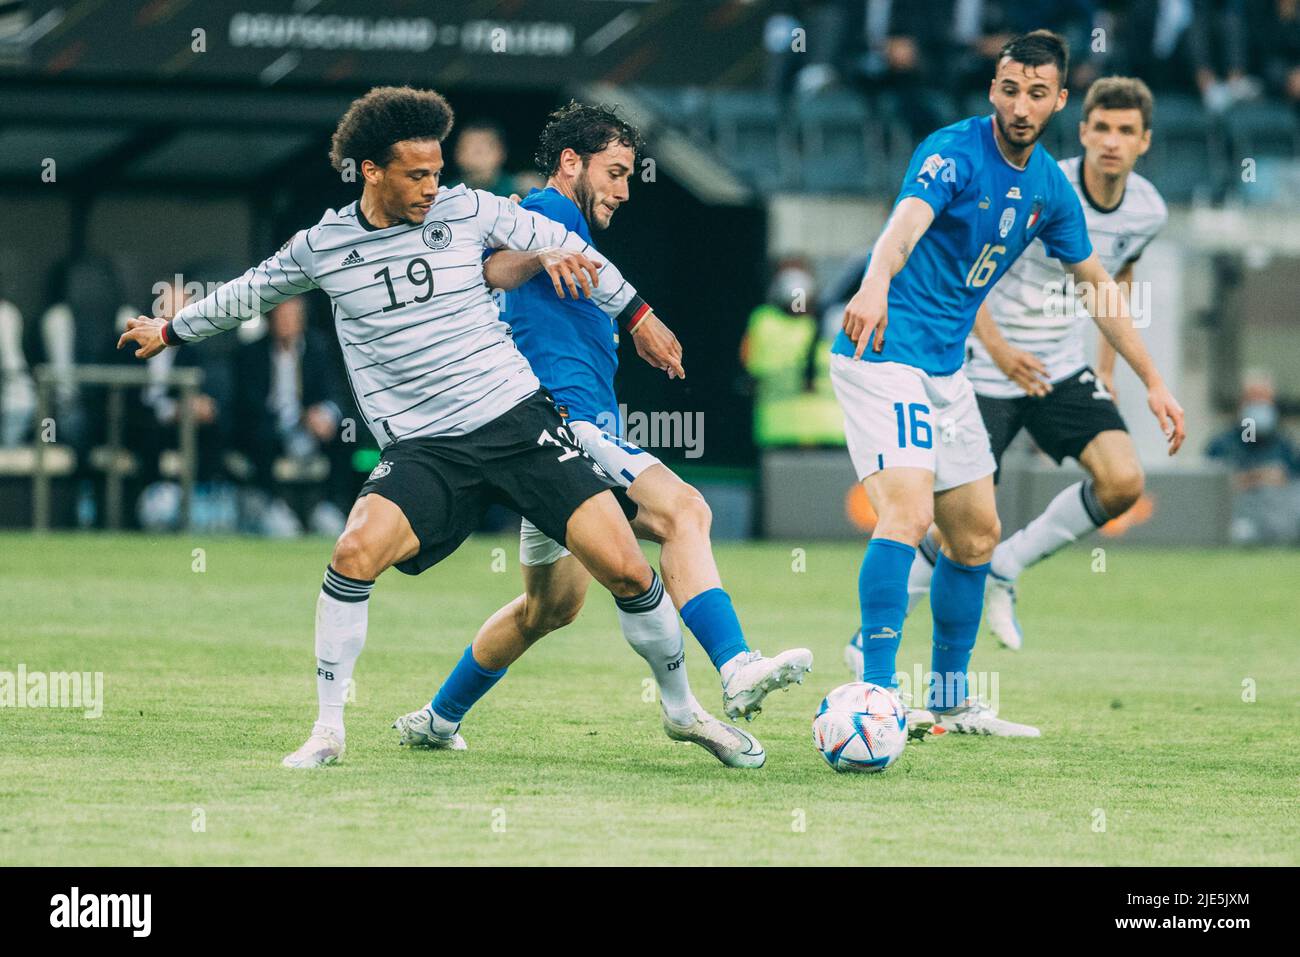 Mönchengladbach, Borussia-Park, 14.06.22: Leroy Sane (L) (Germany) am Ball gegen Davide Calabria (Italy) beim Länderspiel zwischen Deutschland vs. Ita Stock Photo